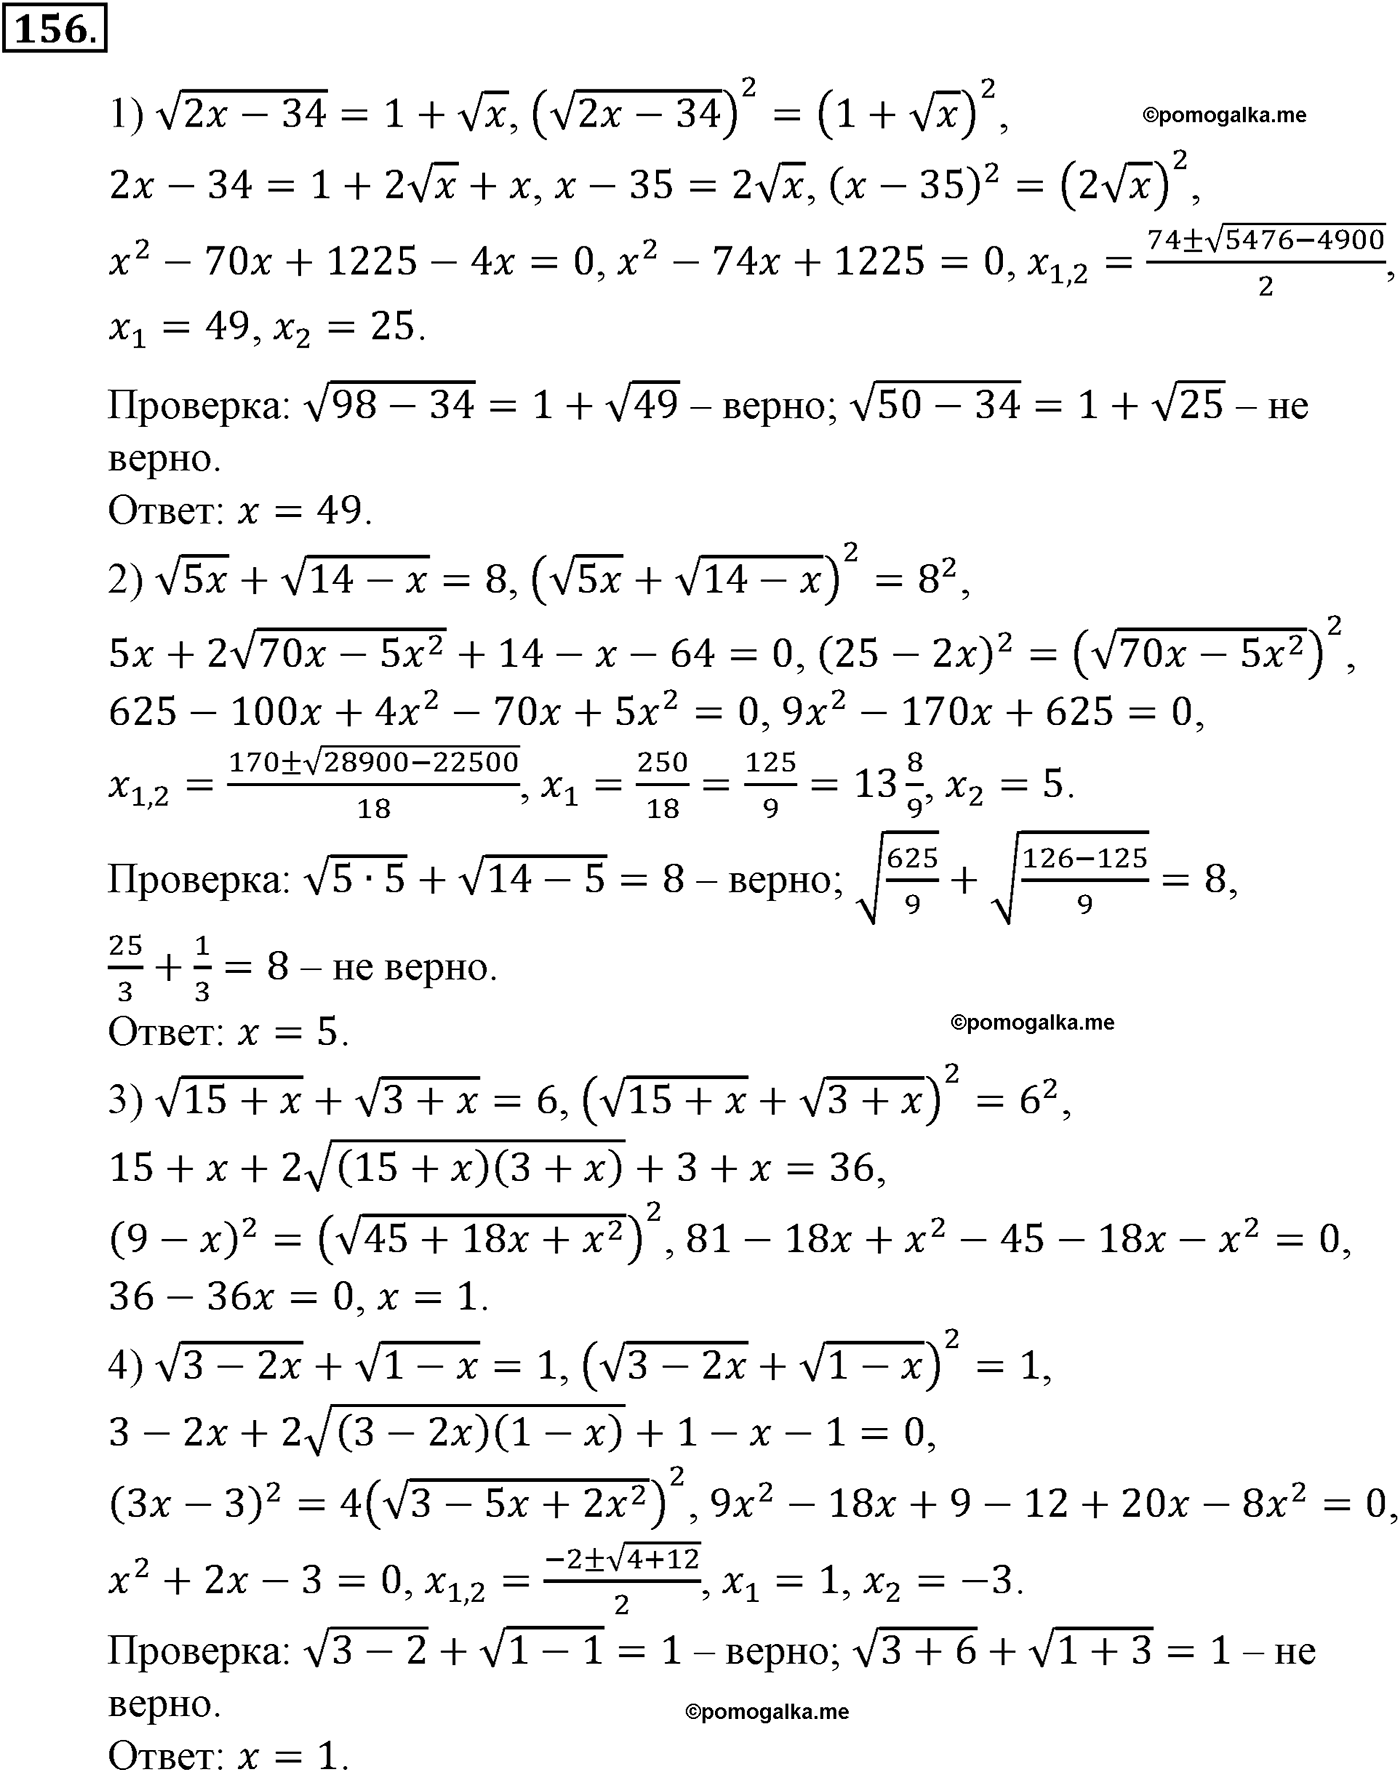 разбор задачи №156 по алгебре за 10-11 класс из учебника Алимова, Колягина